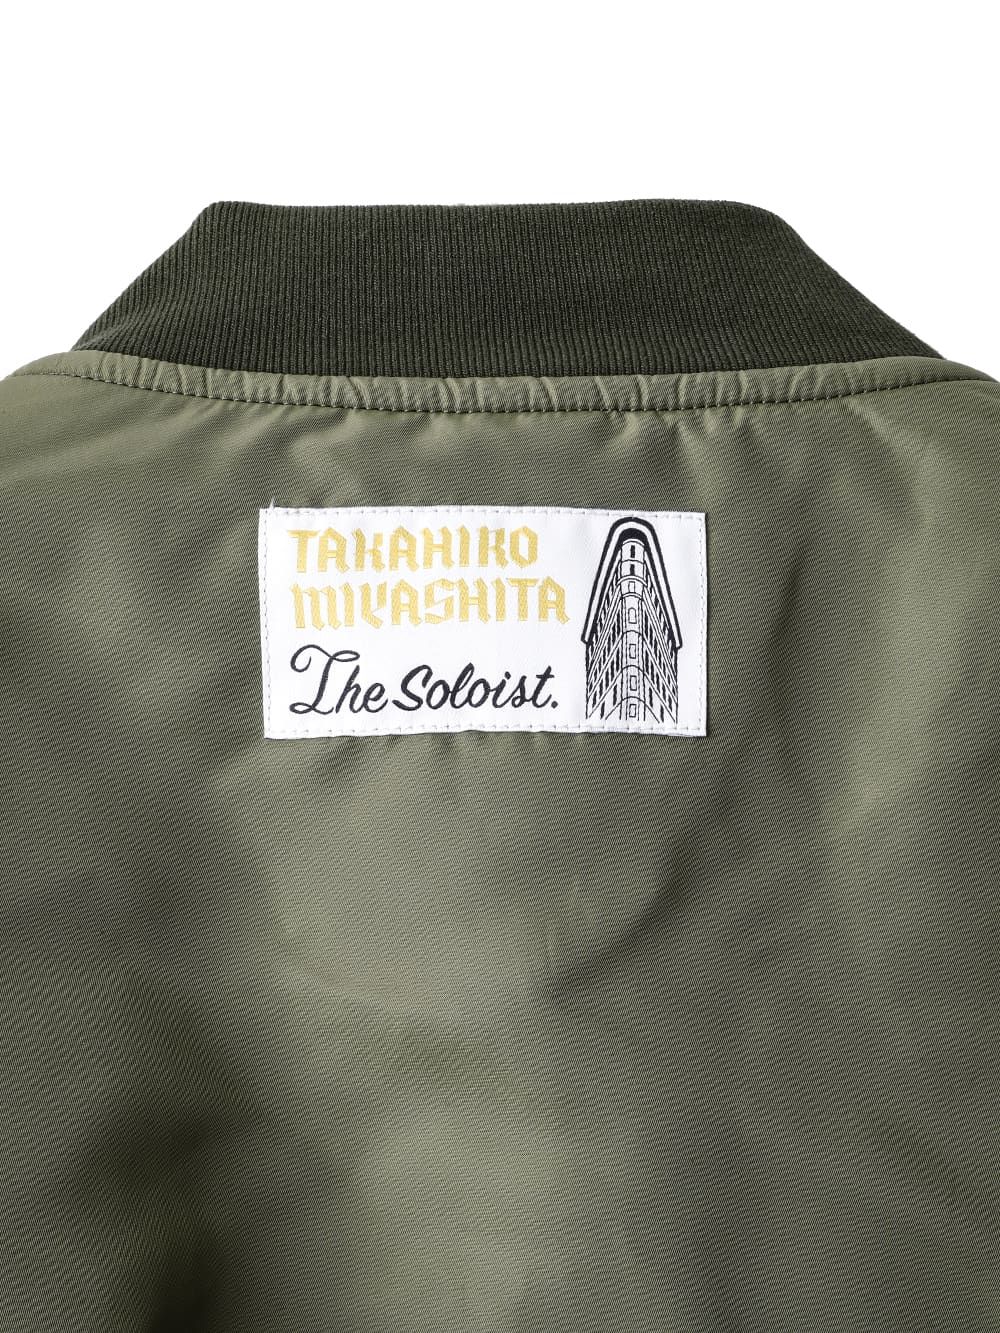 two-way bomber jacket. – TAKAHIROMIYASHITATheSoloist.（タカヒロ 